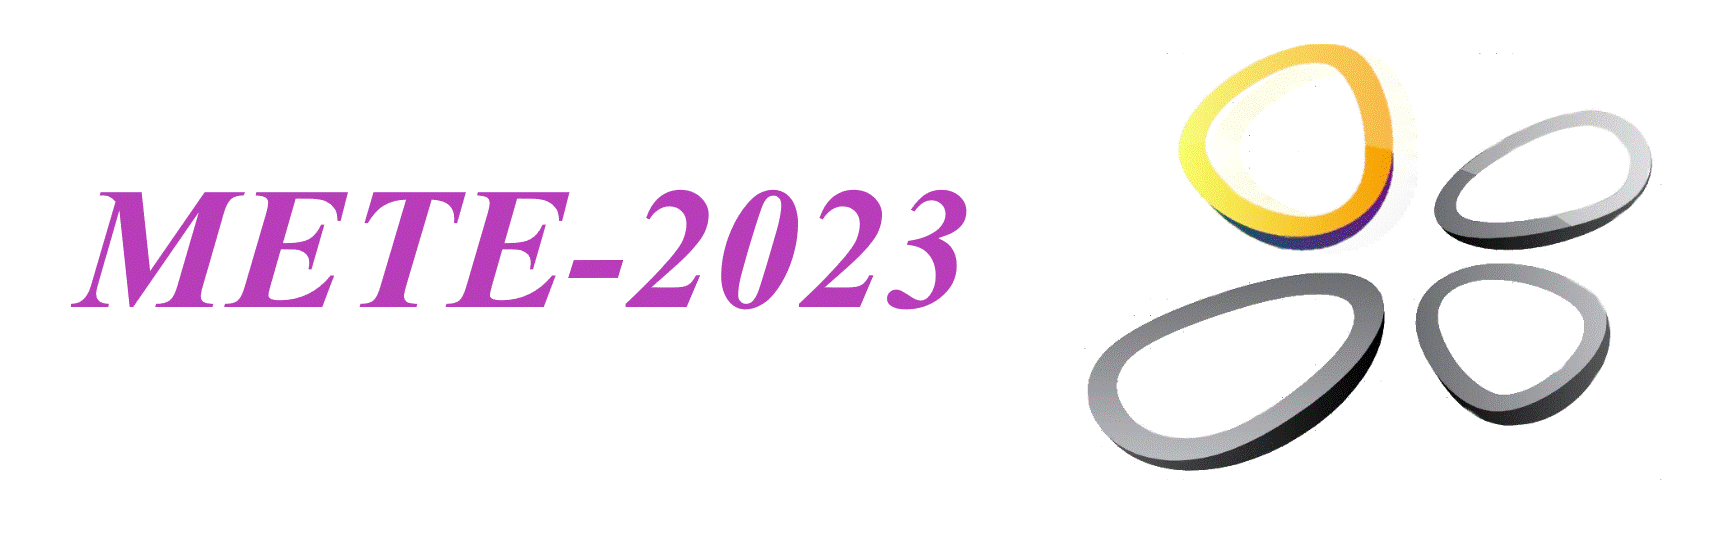 METE-2023